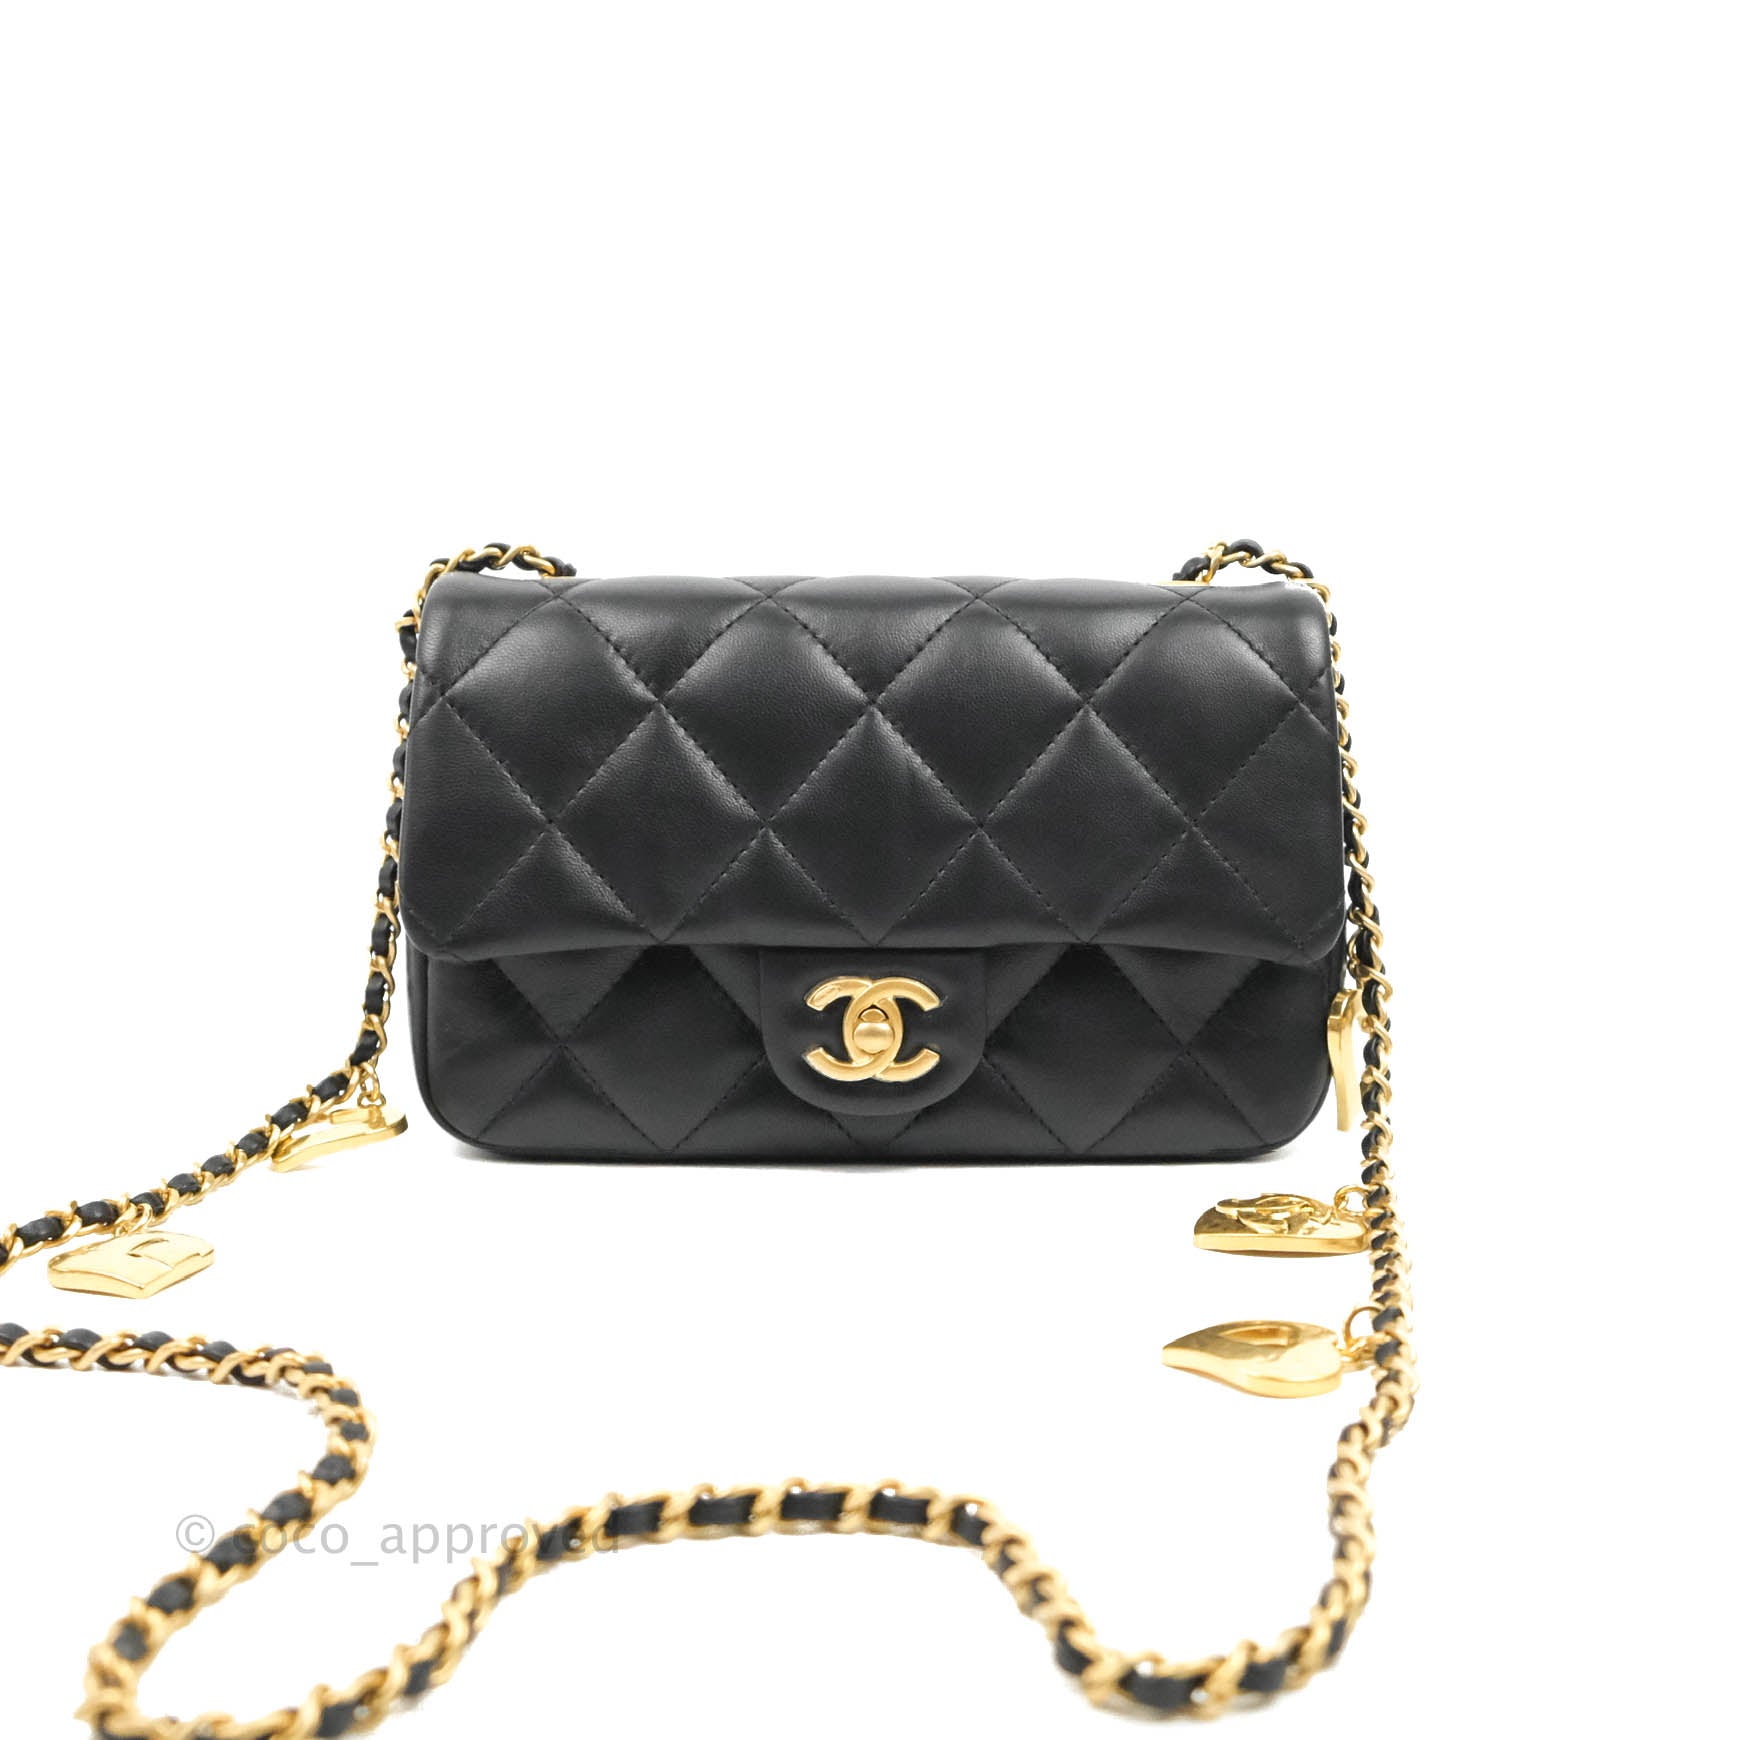 My Chanel Mini Flap Bag –